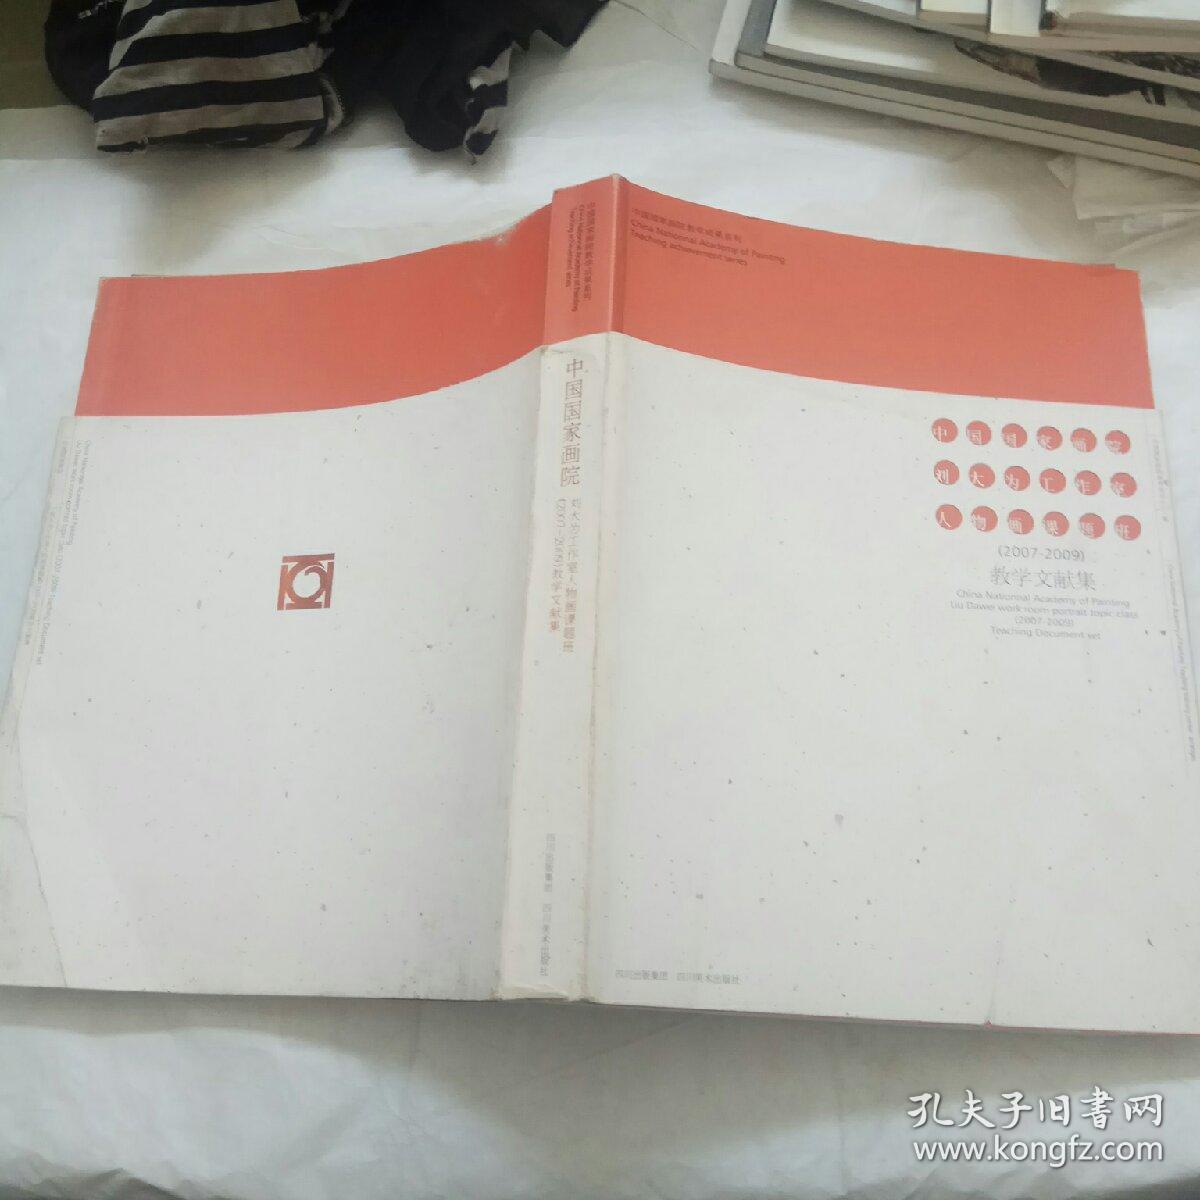 中国国家画院 刘大为工作室人物画课题班（2007——2009）教学文献集